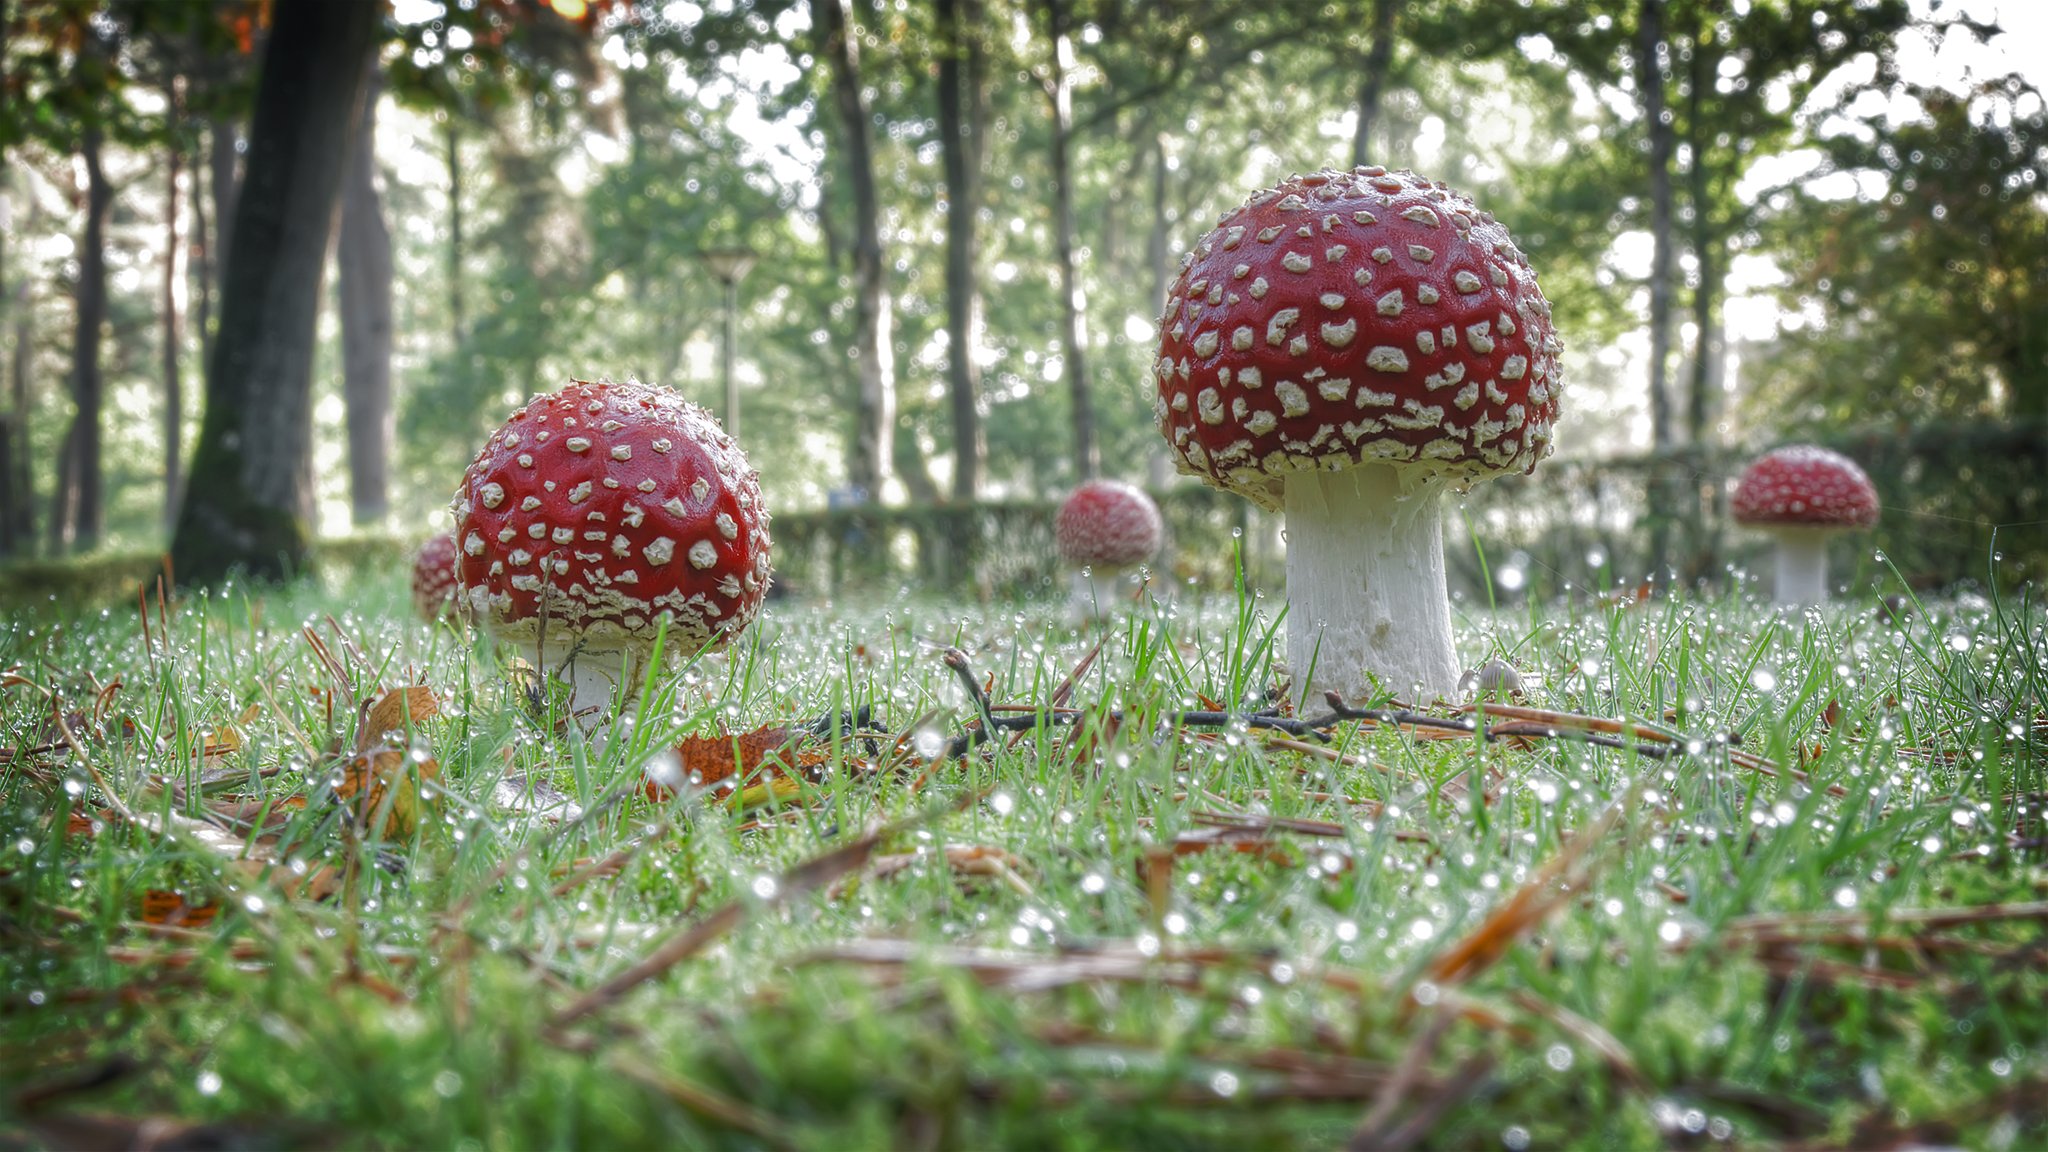 Mushroom gathering ...